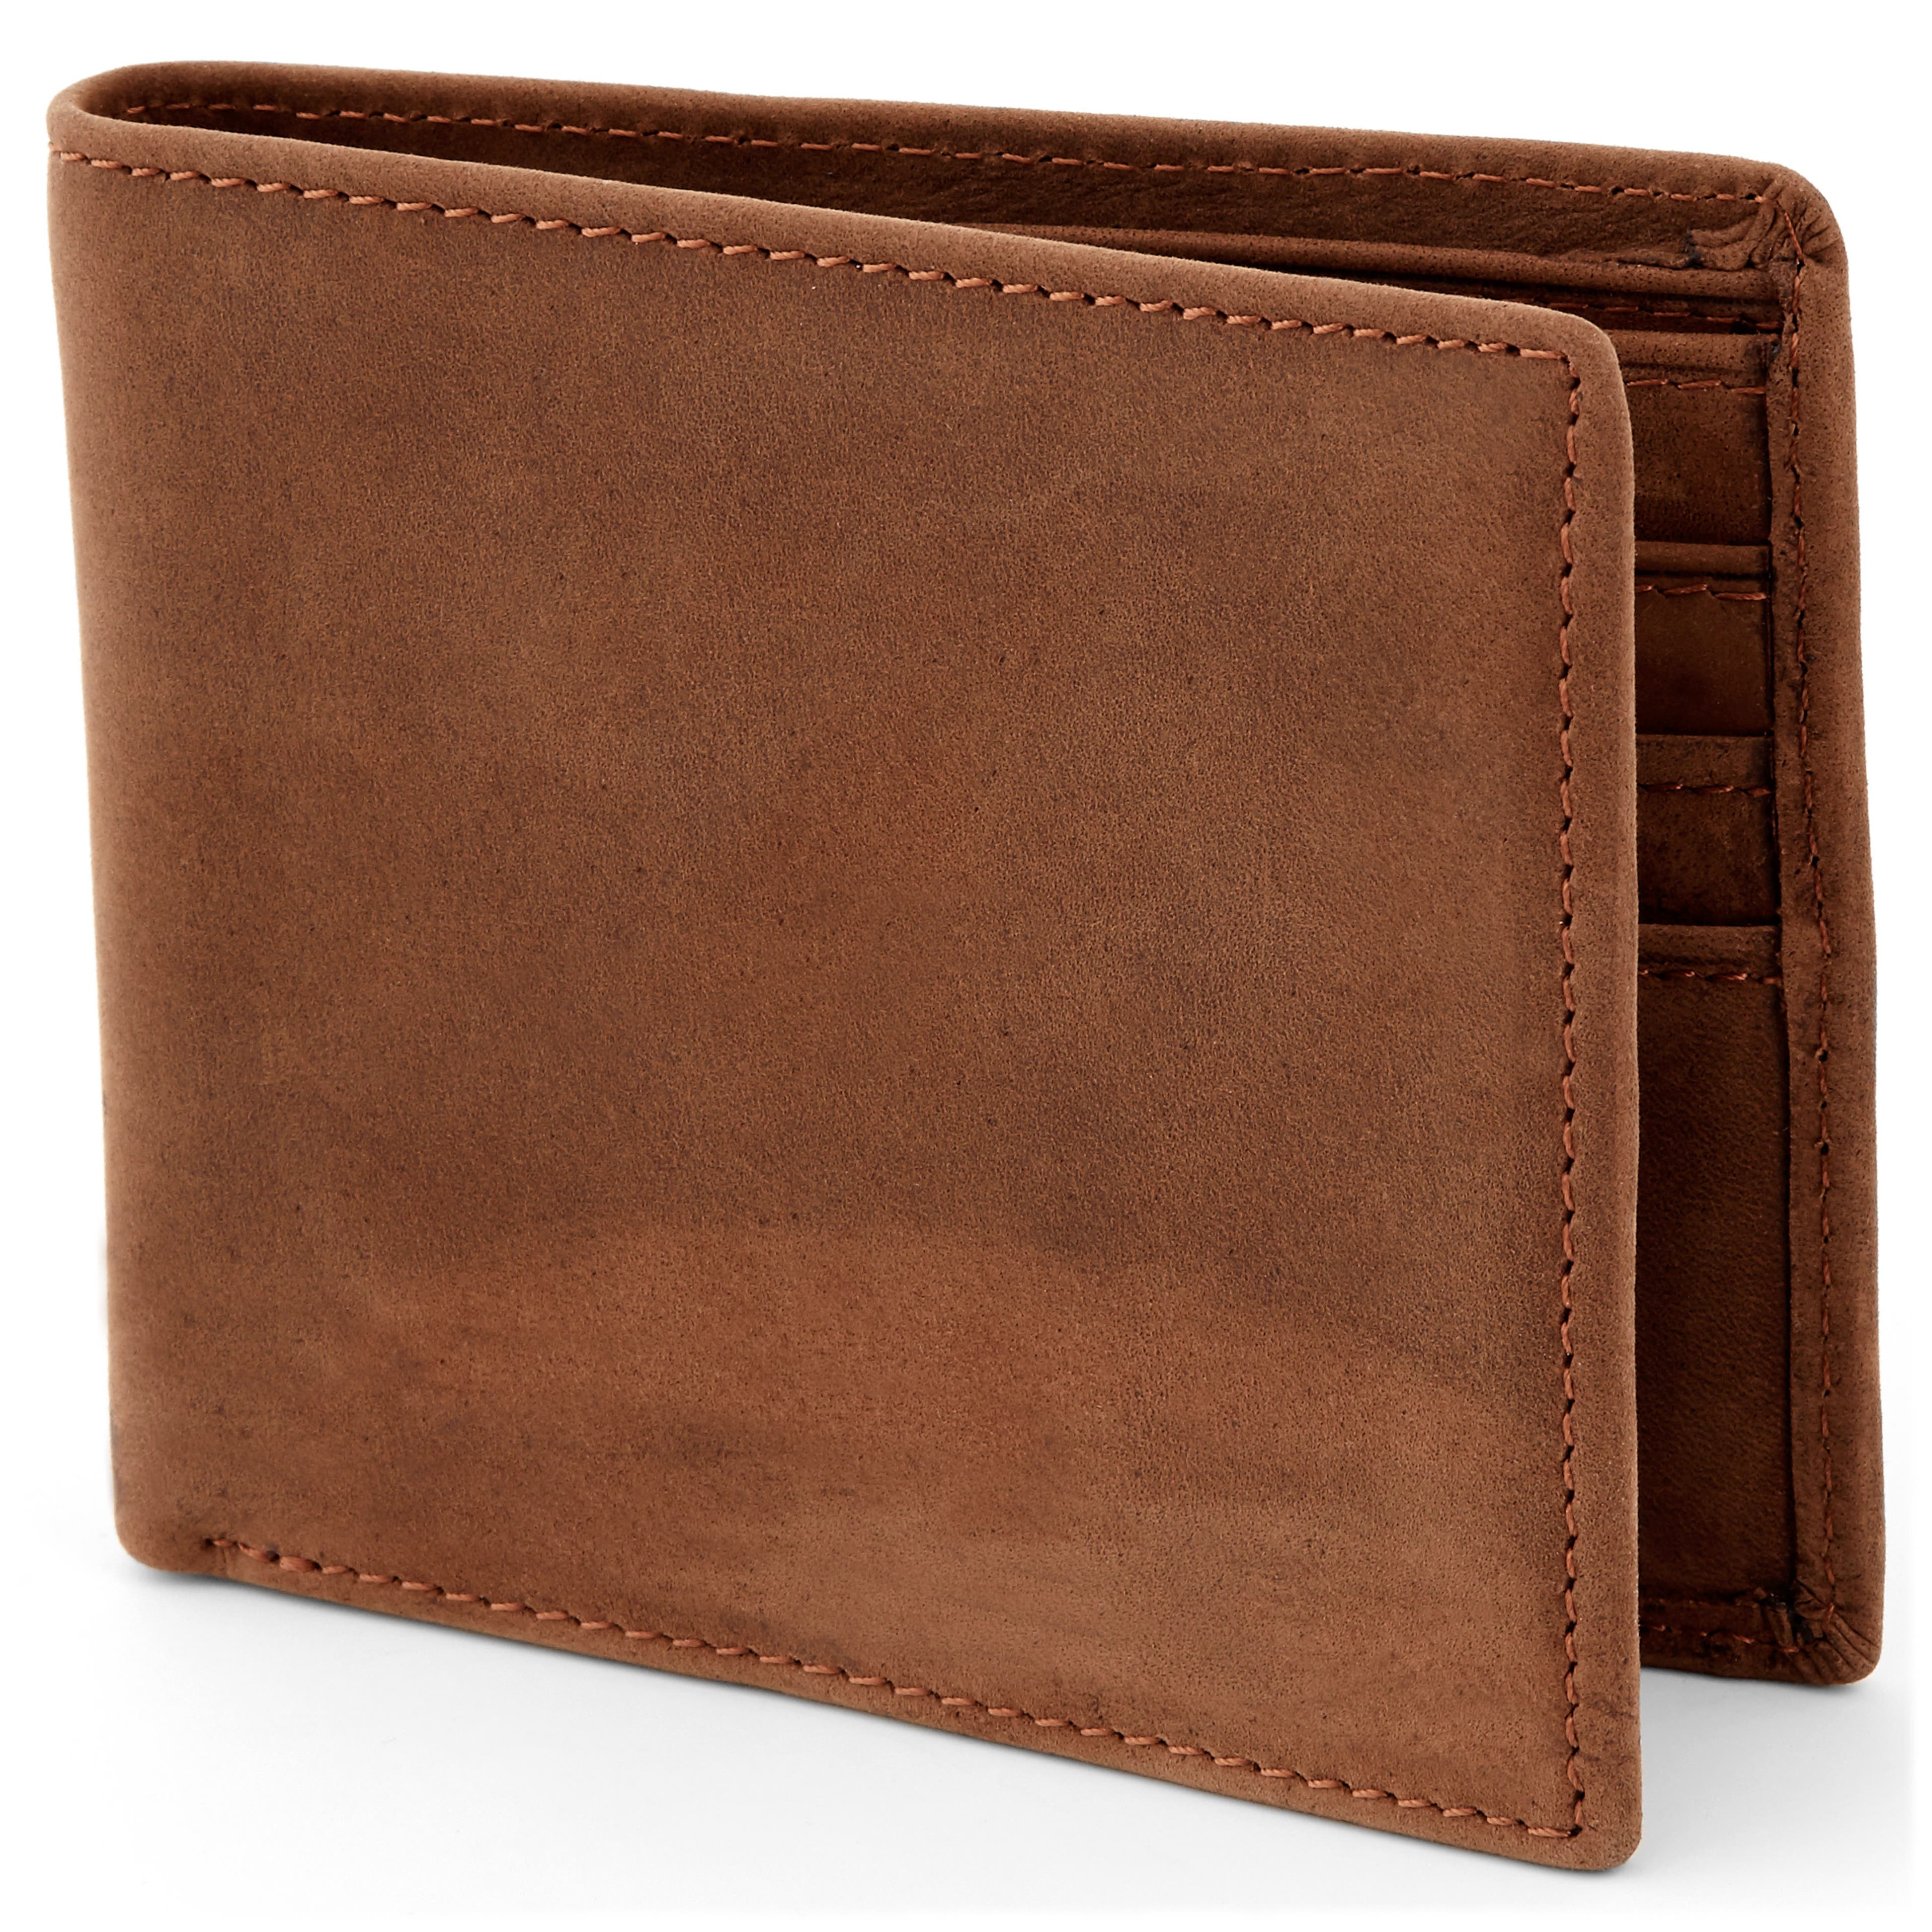 Leather Vertical Slim Wallet - Dark Brown - EvenOdd